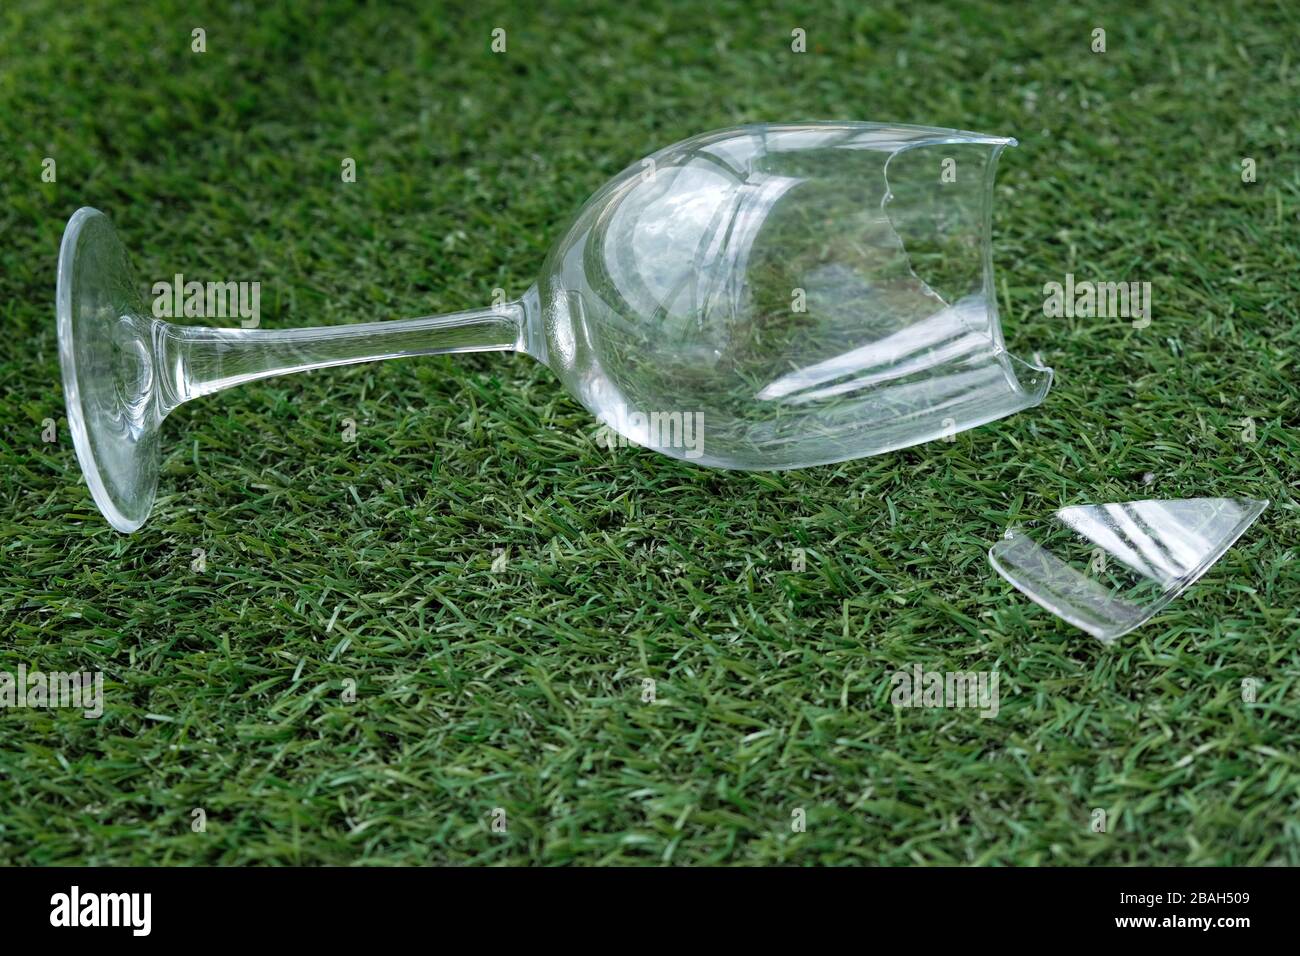 Glasbruch auf Kunstrasen. Auf dem Gras liegt ein leeres Glas auf dem Bein.  Das Mädchen ließ ihr Glas fallen Stockfotografie - Alamy